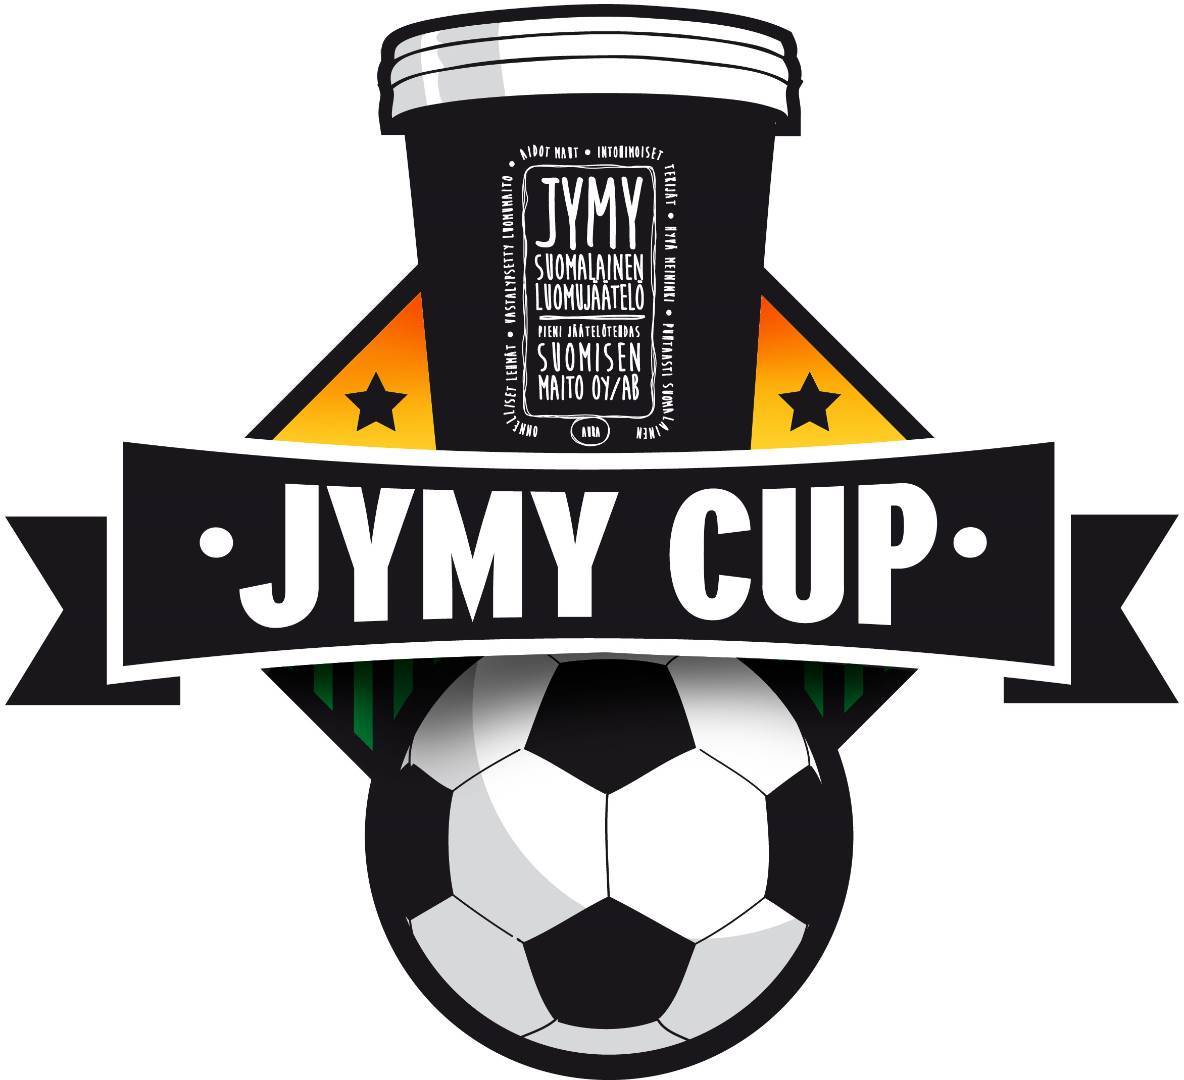 Jymy Cupin yhteistyökumppanit 2019